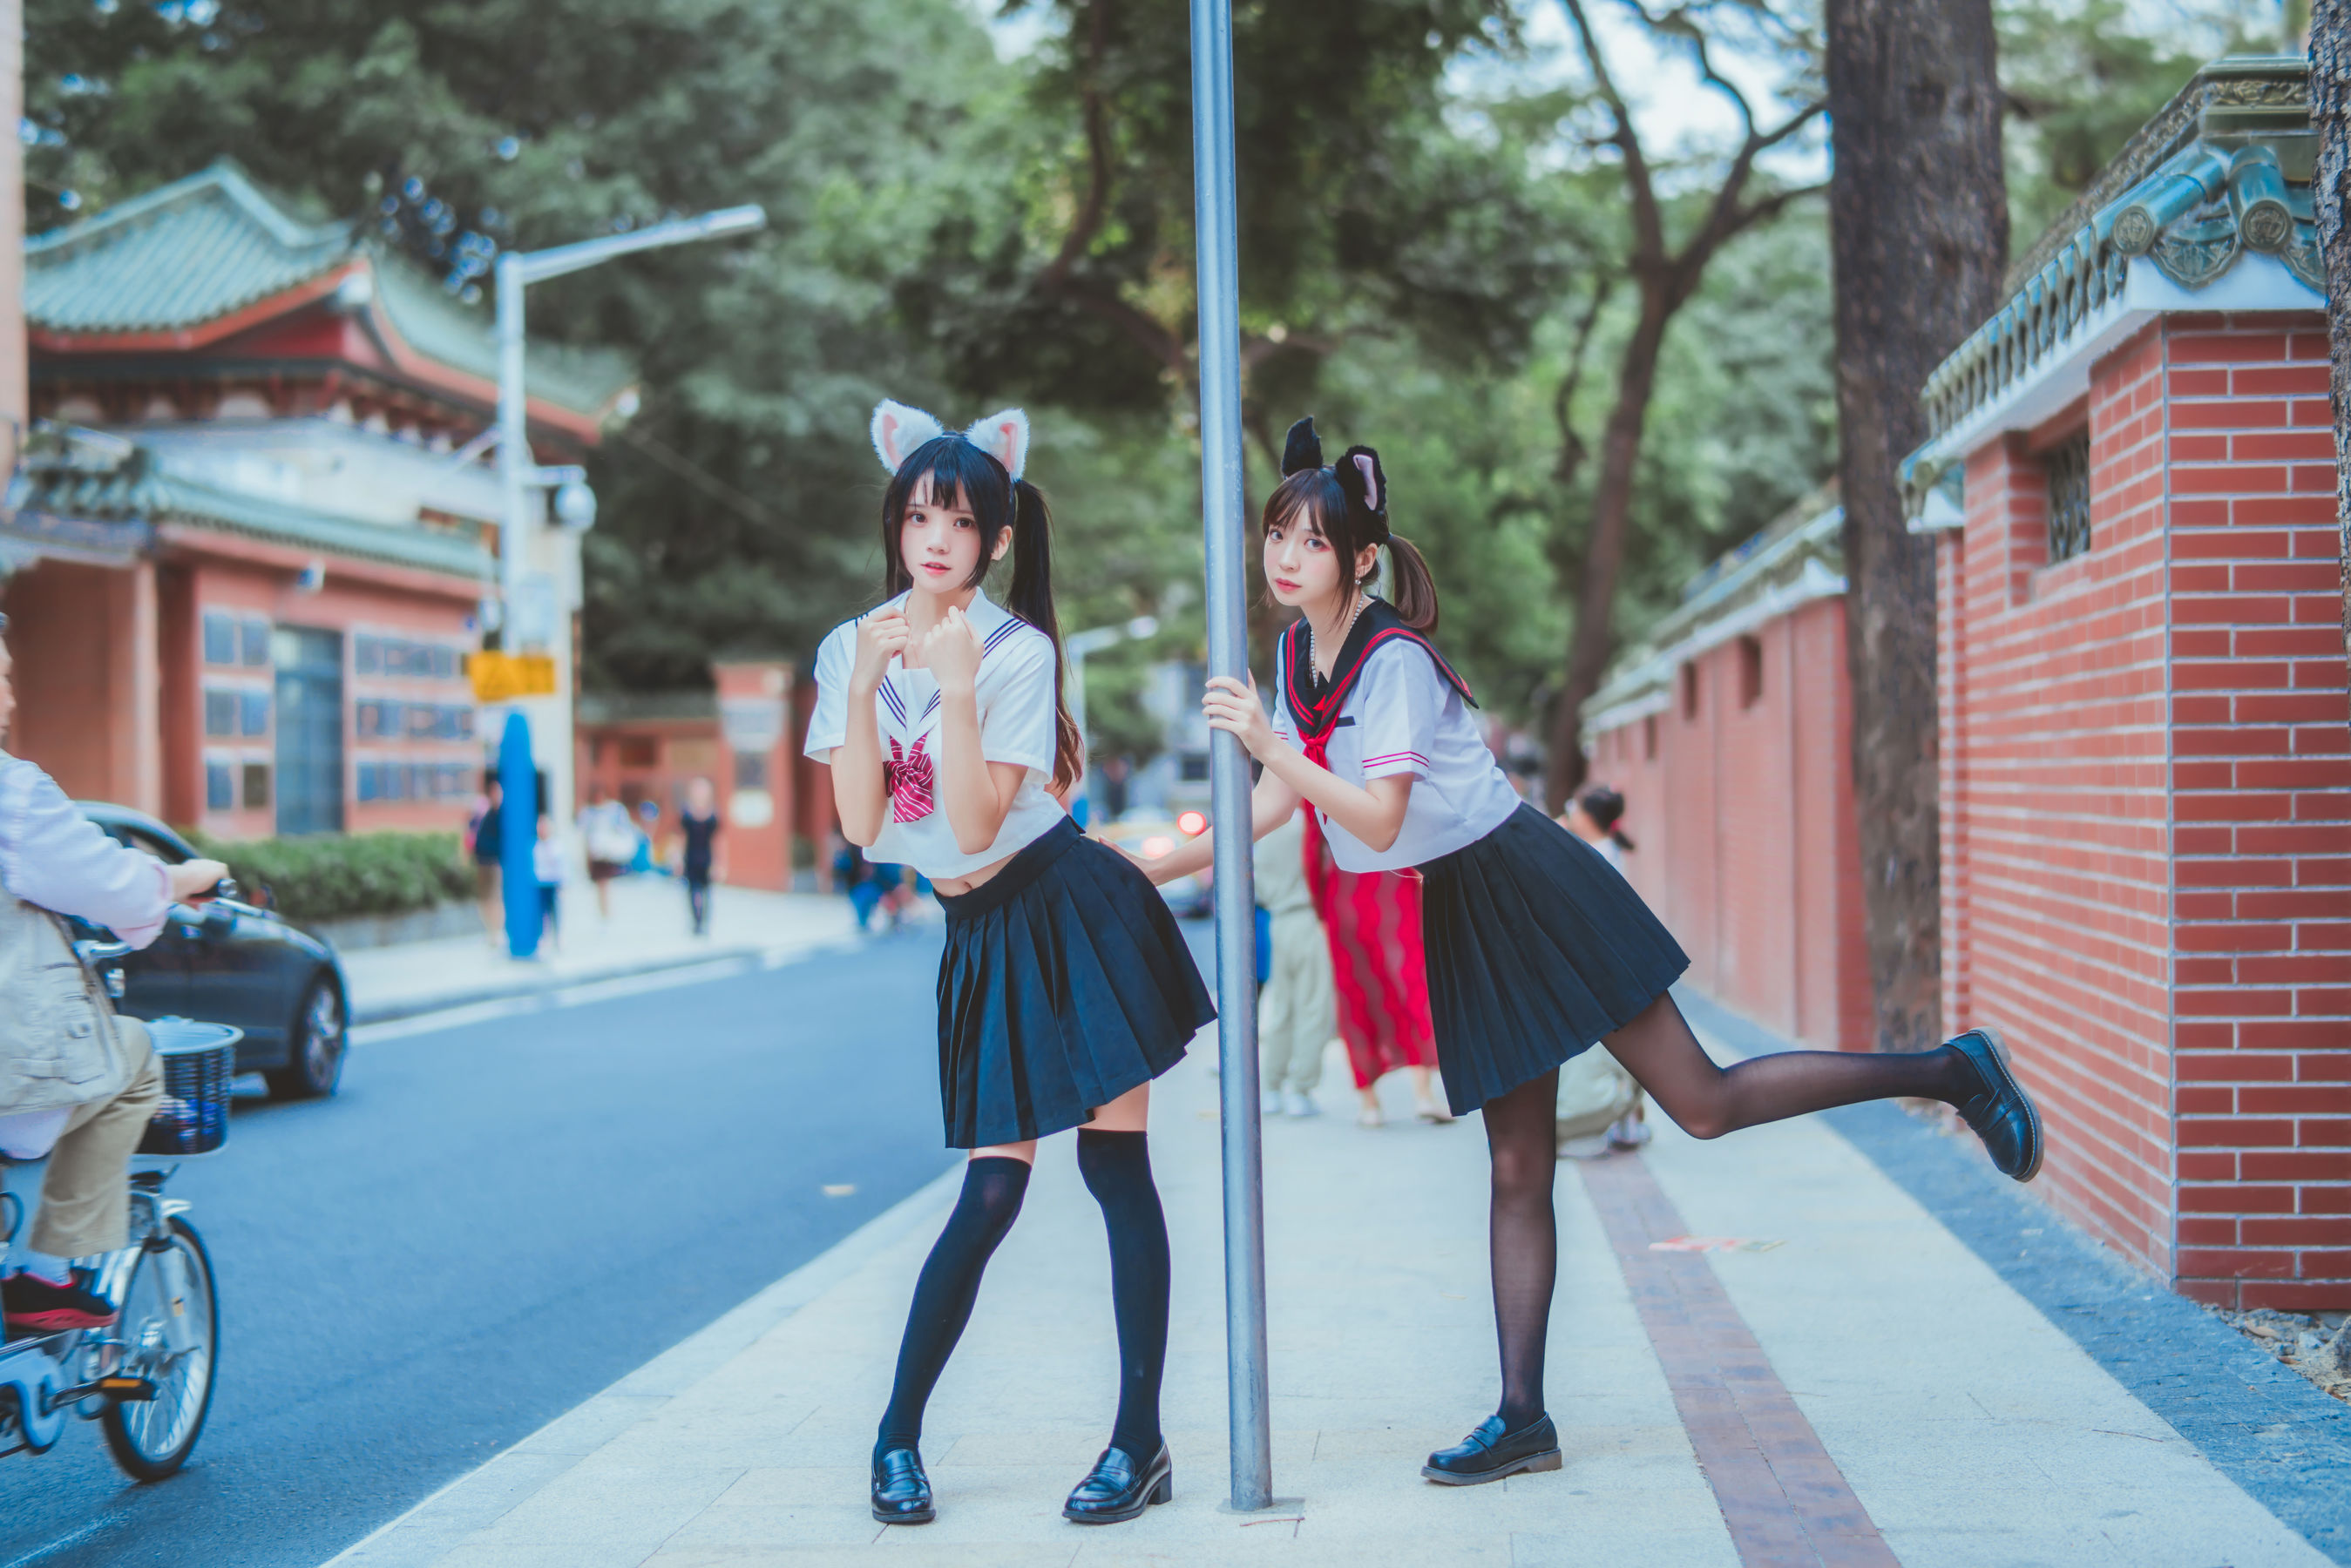 People 2698x1800 CherryNeko women model women outdoors Asian two women cat ears school uniform urban twintails Feng Mao